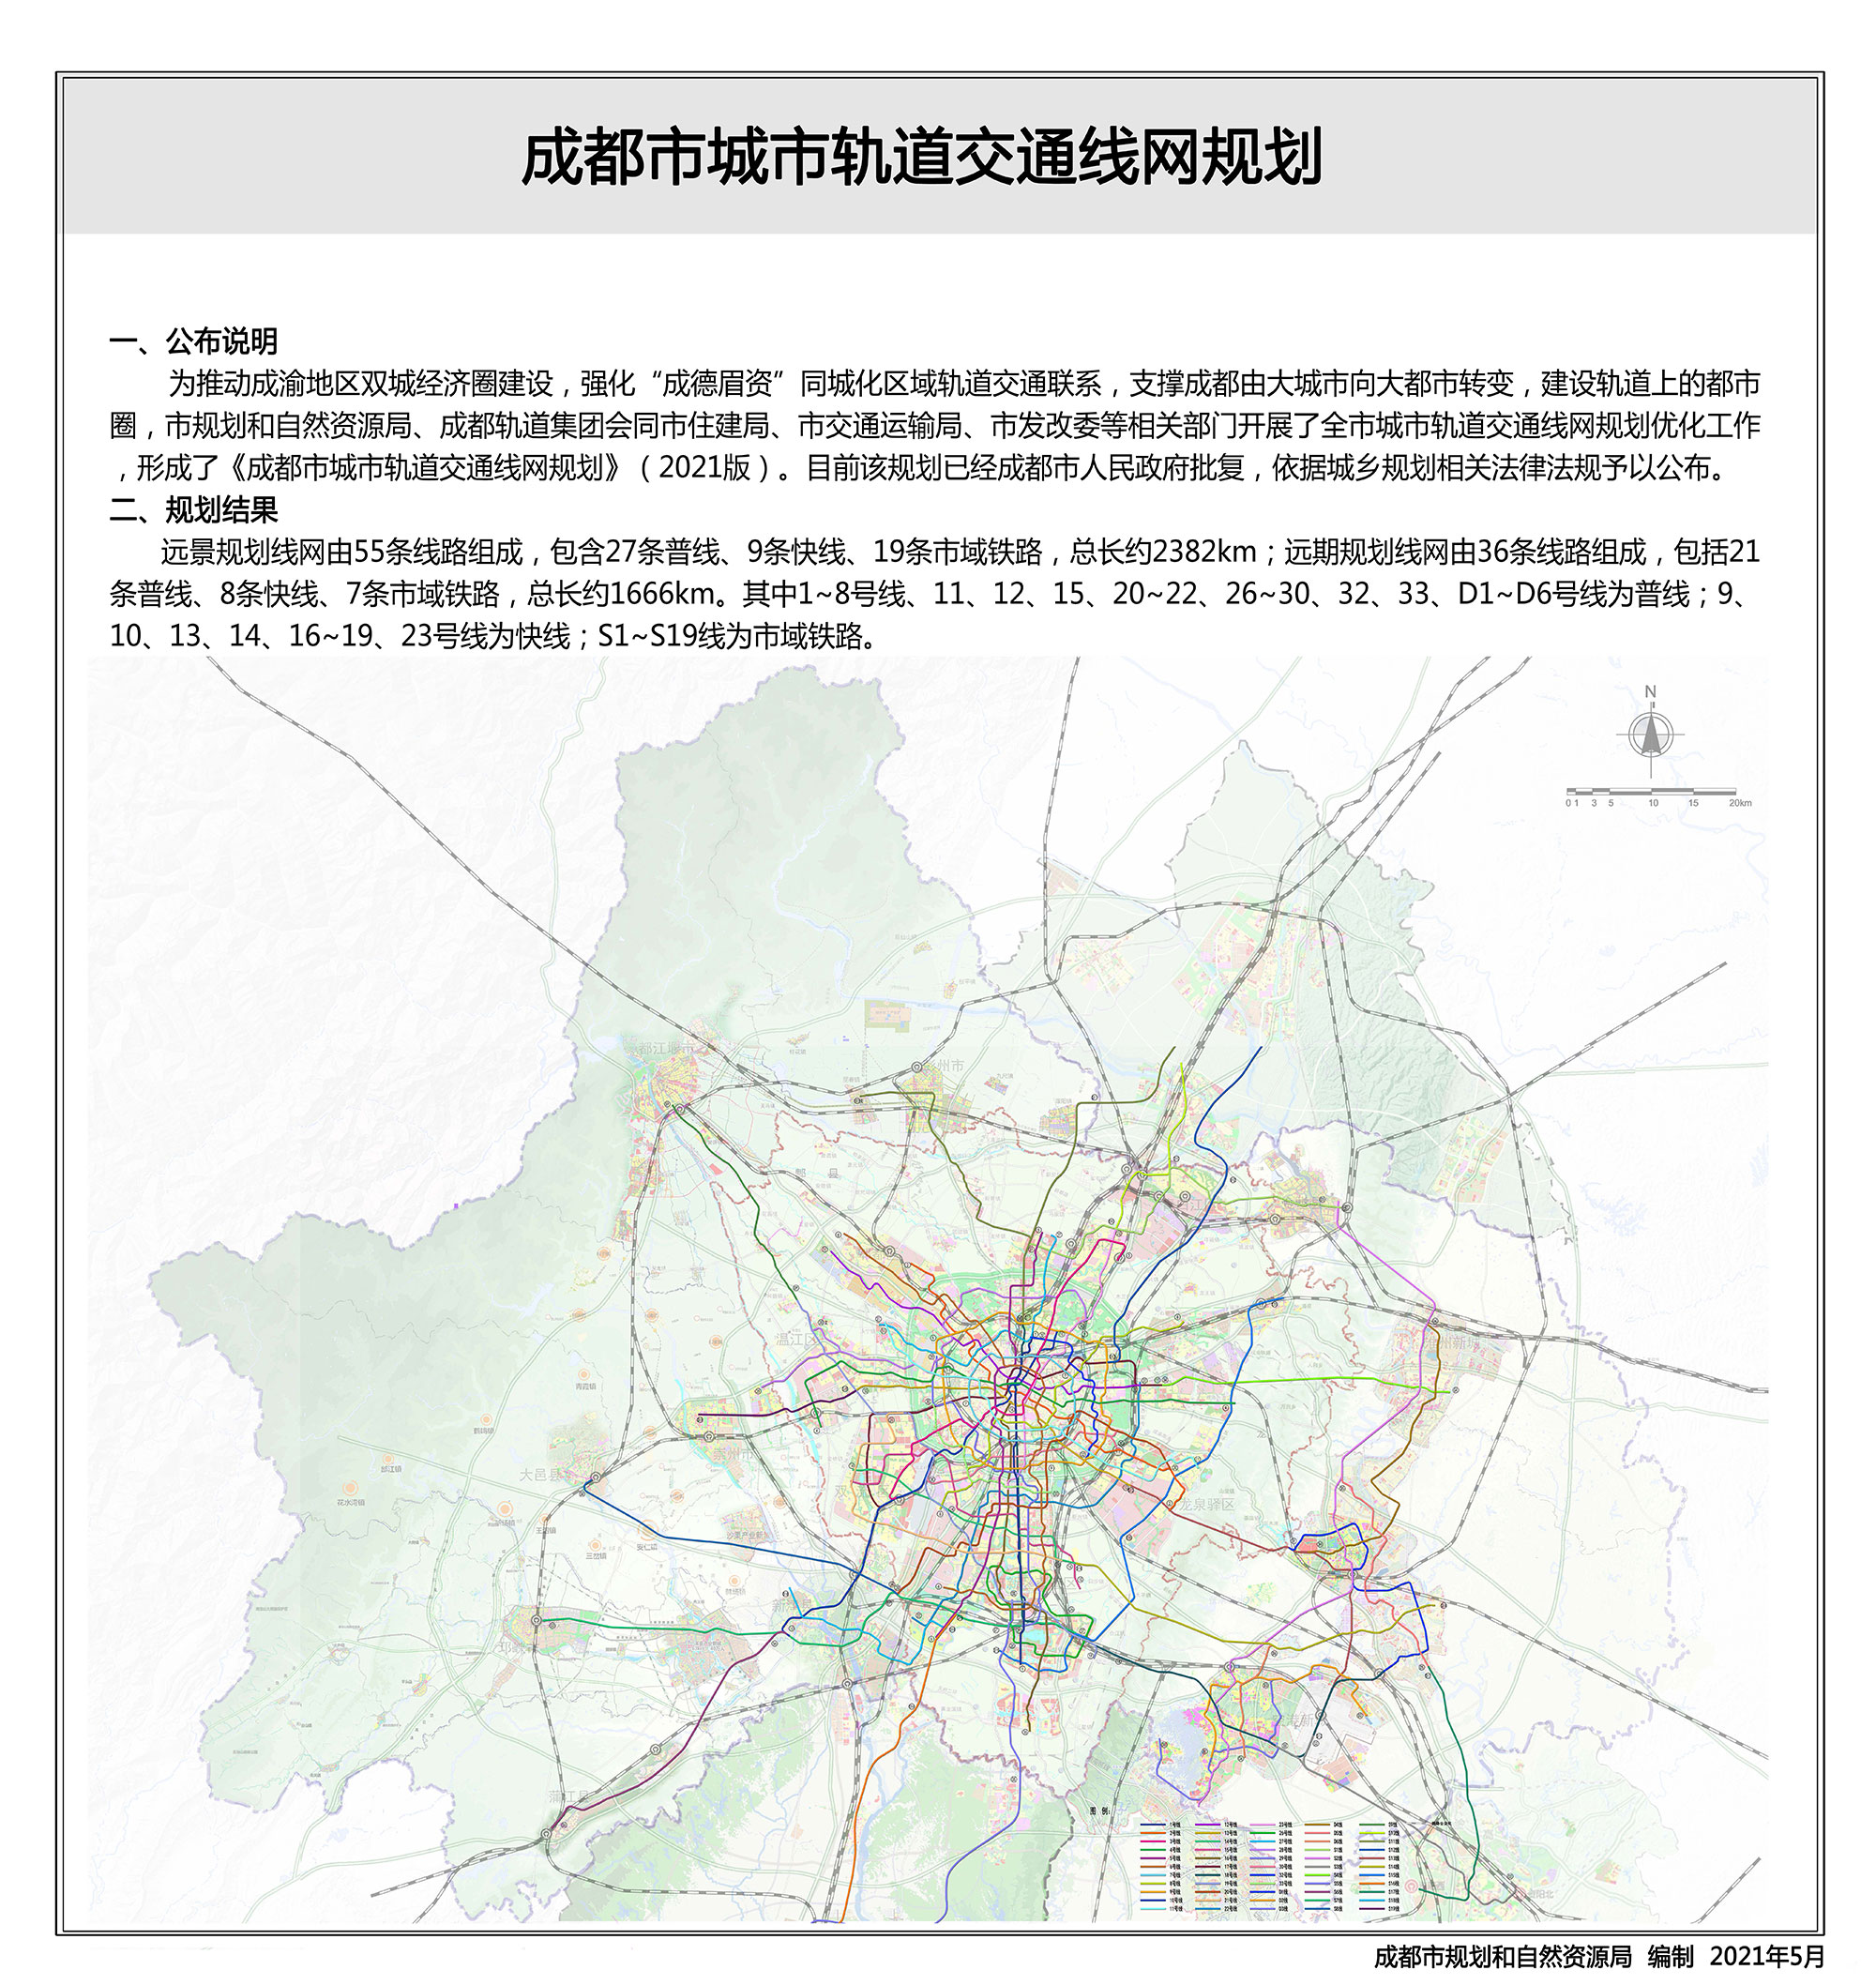 成都市城市轨道交通线网规划发布,市域铁路s17线抵达资阳西站